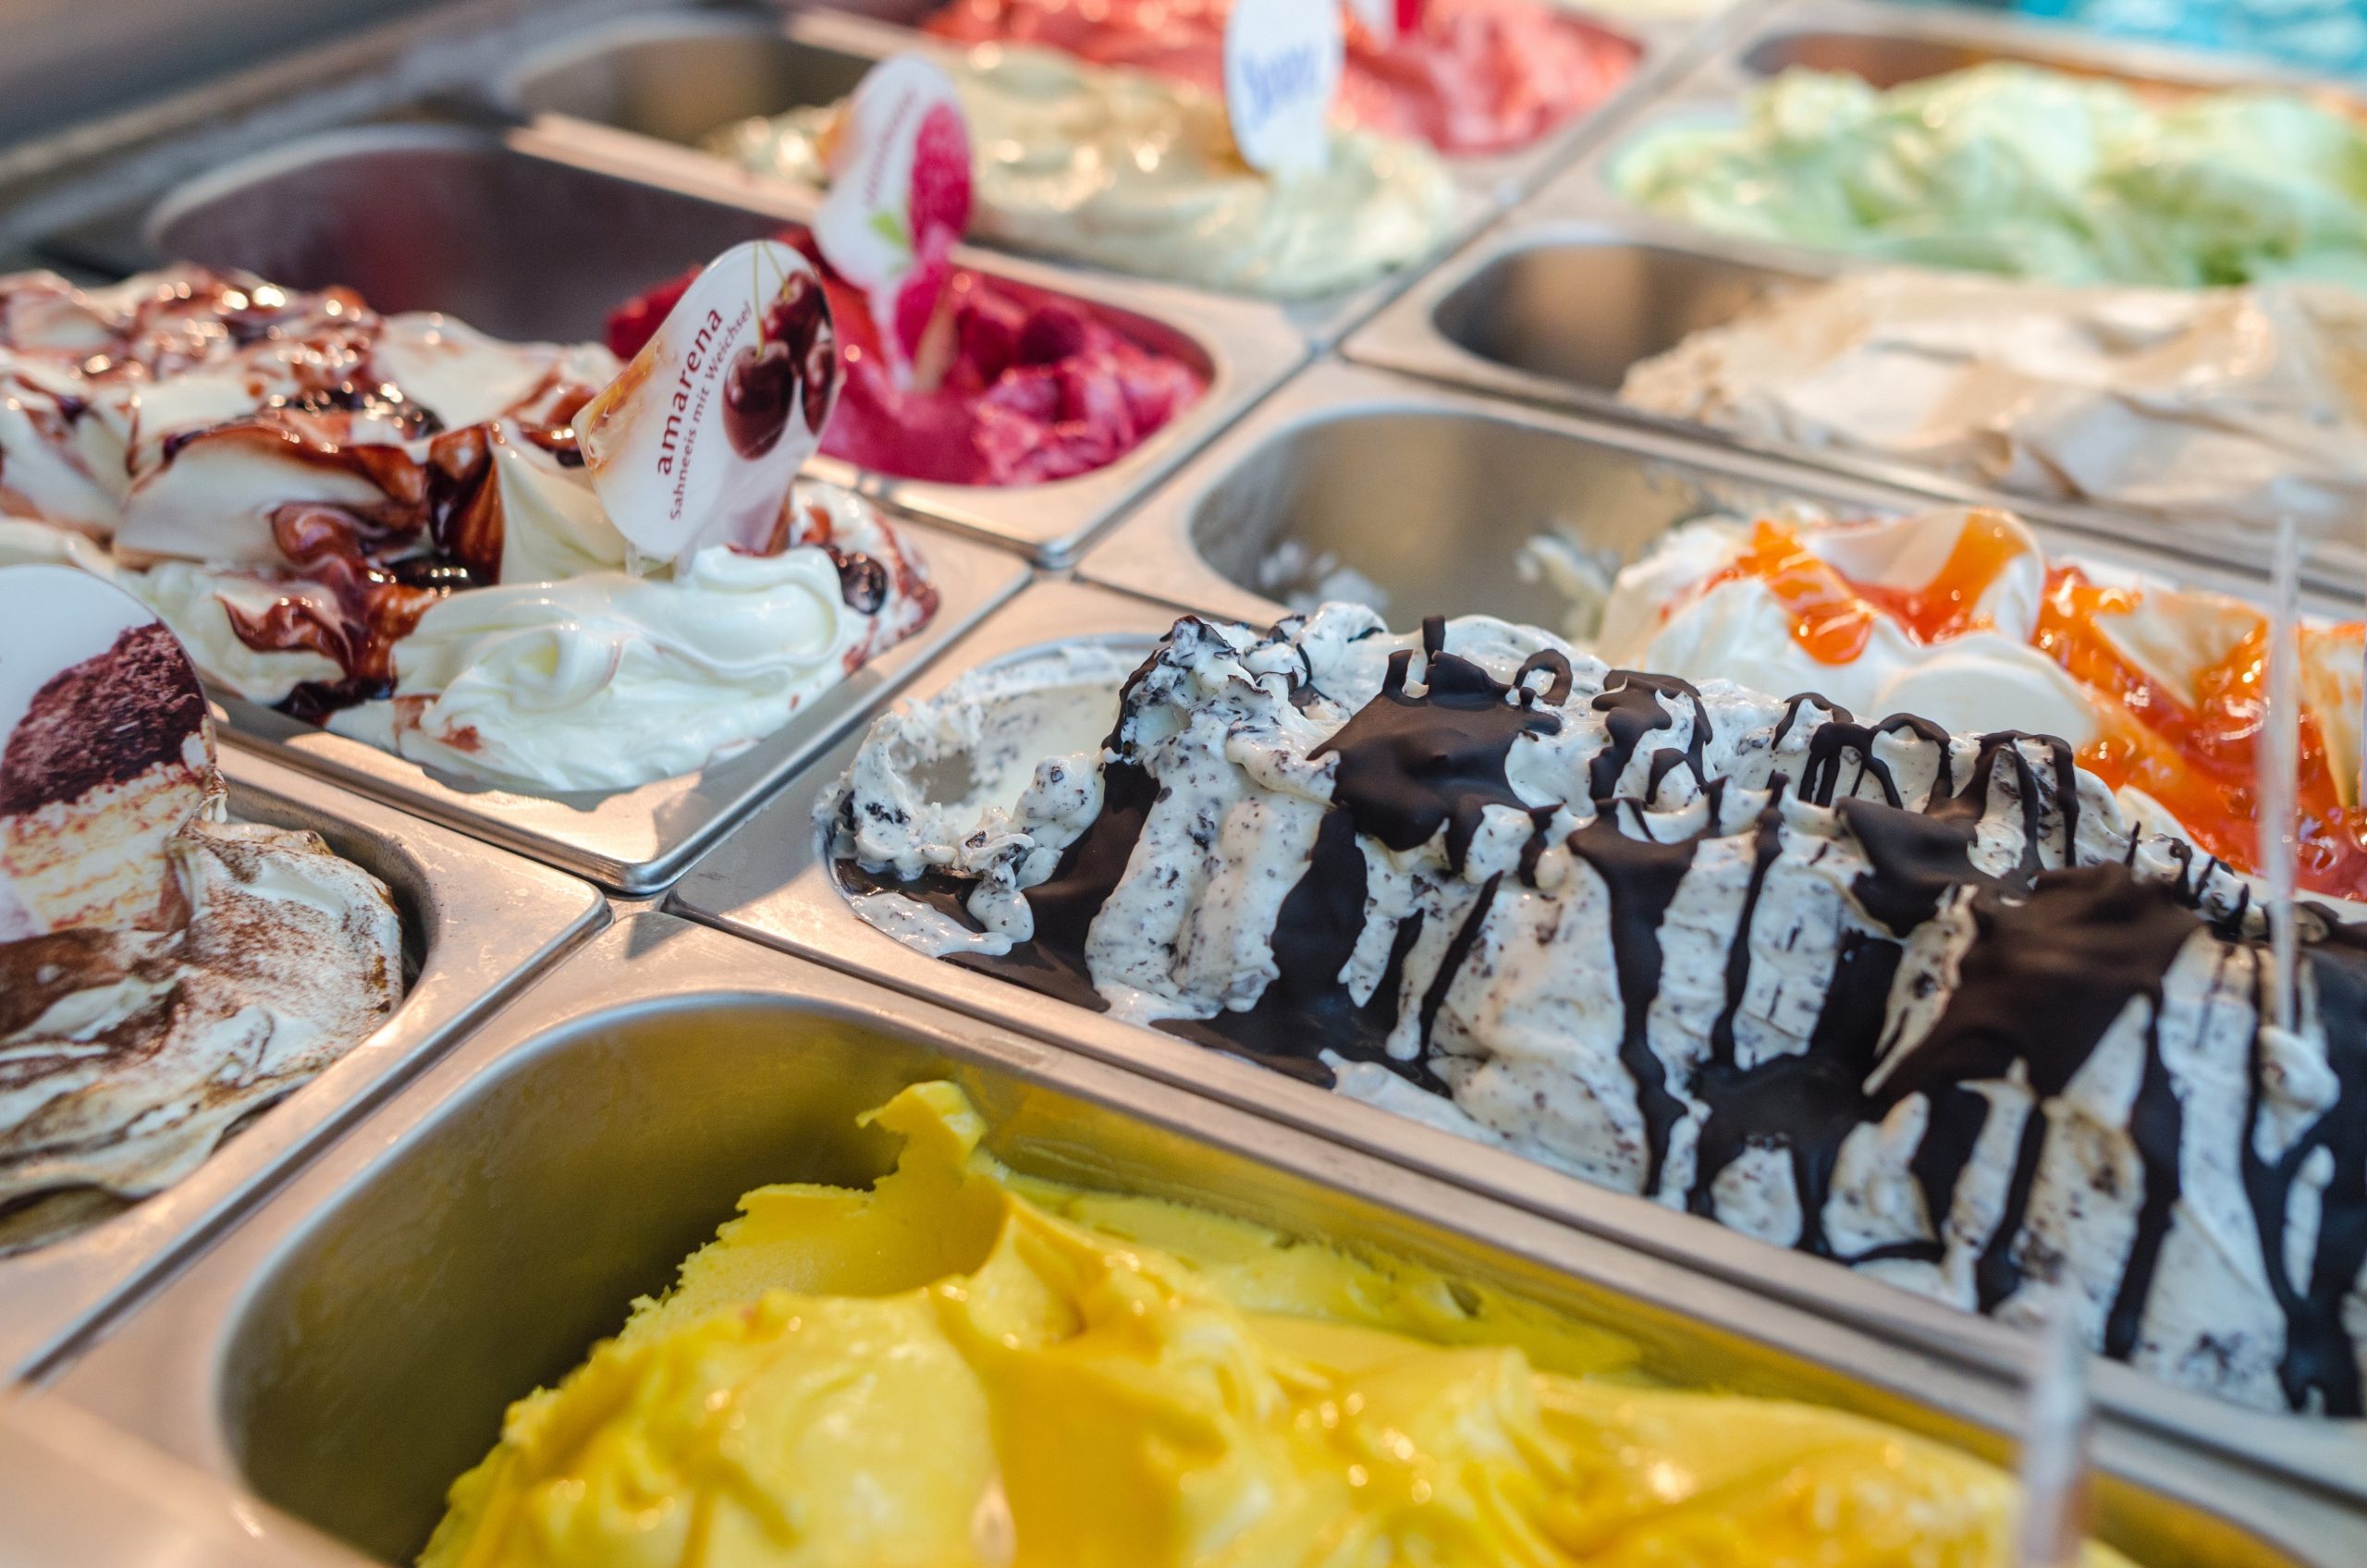 Mehrere bunte Eissorten bei der Theke einer Eisdiele.